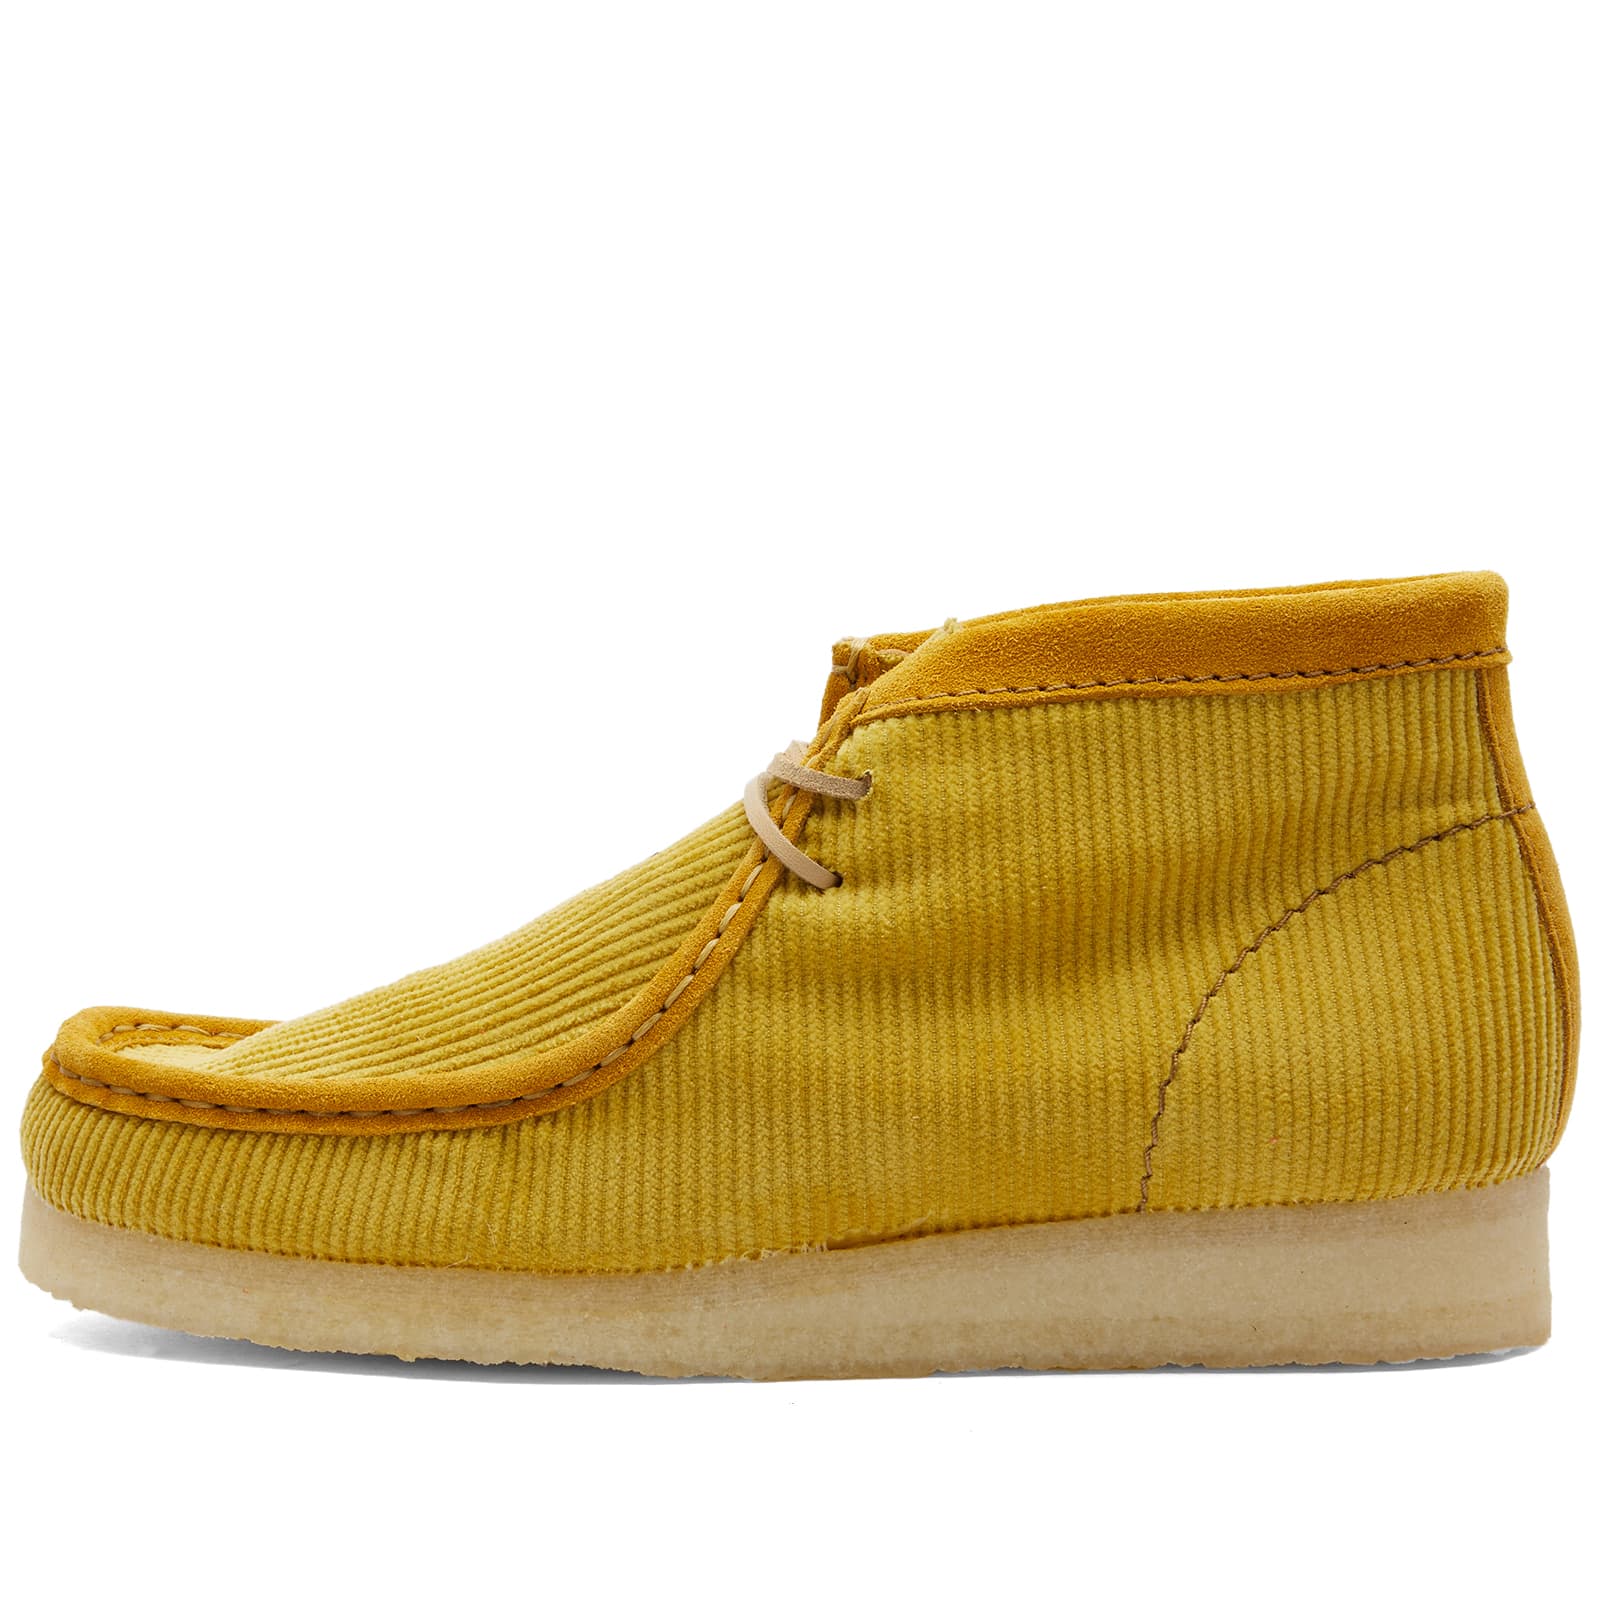 Ботинки Clarks Originals Mayde Wallabee, желтый повседневные ботинки на шнуровке clarks originals